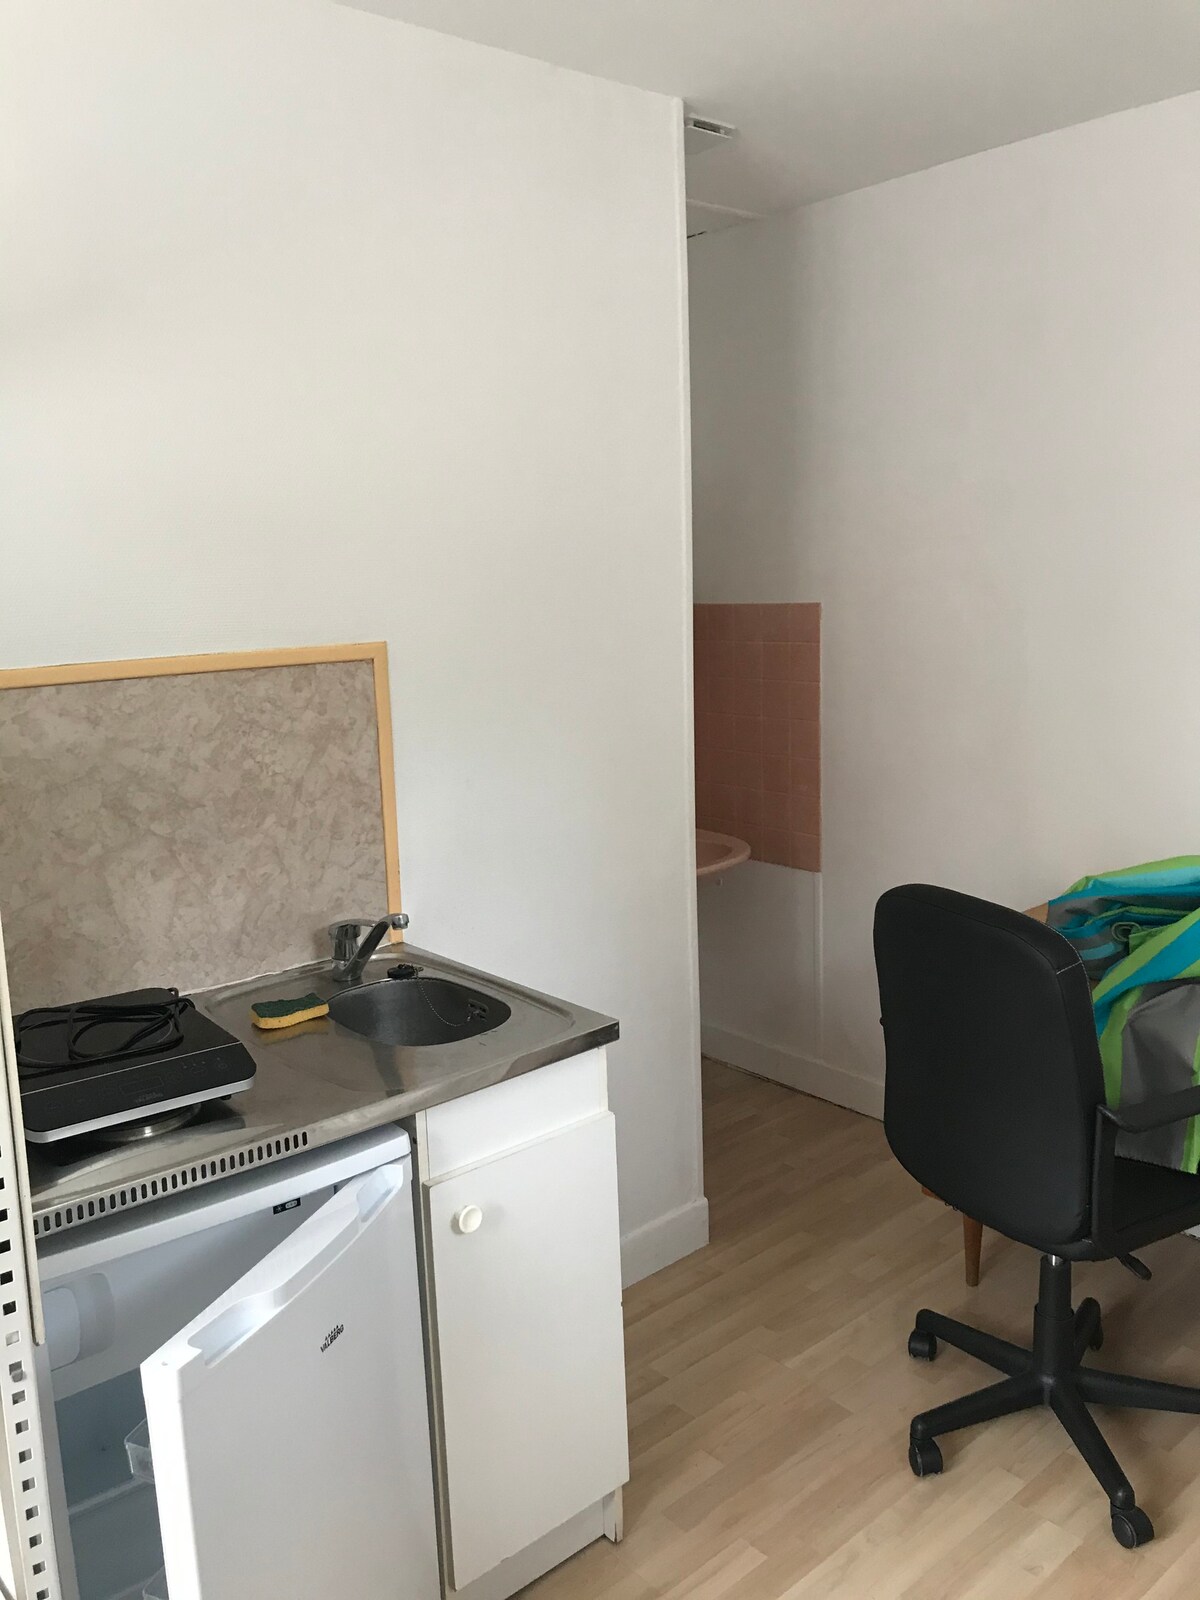 16平方米带小厨房的单间公寓。